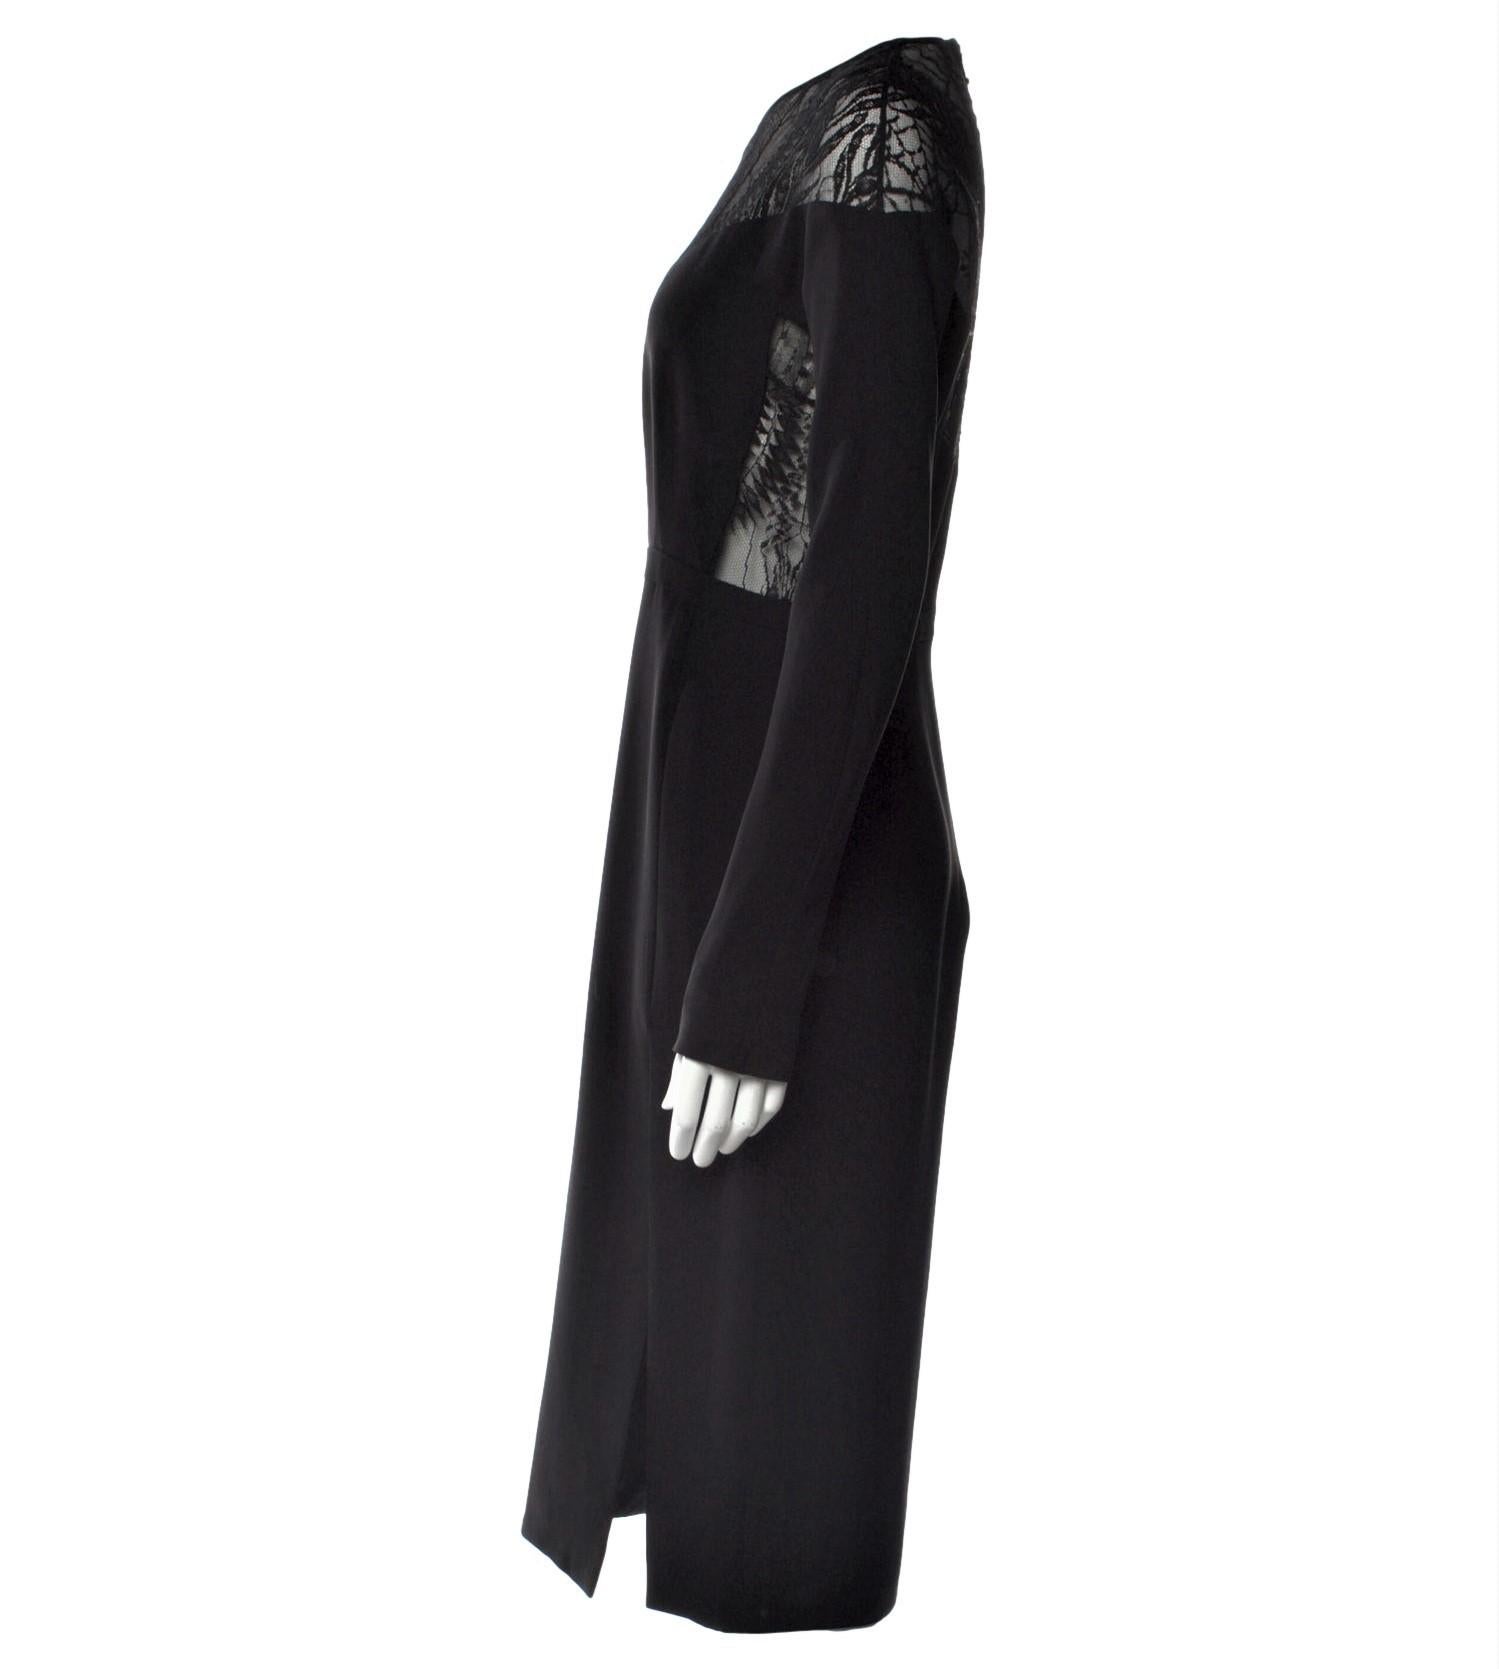 New Rare Gucci Black Spiderweb Silk Runway Dress Fall 2013 Sz 42 $2875 1